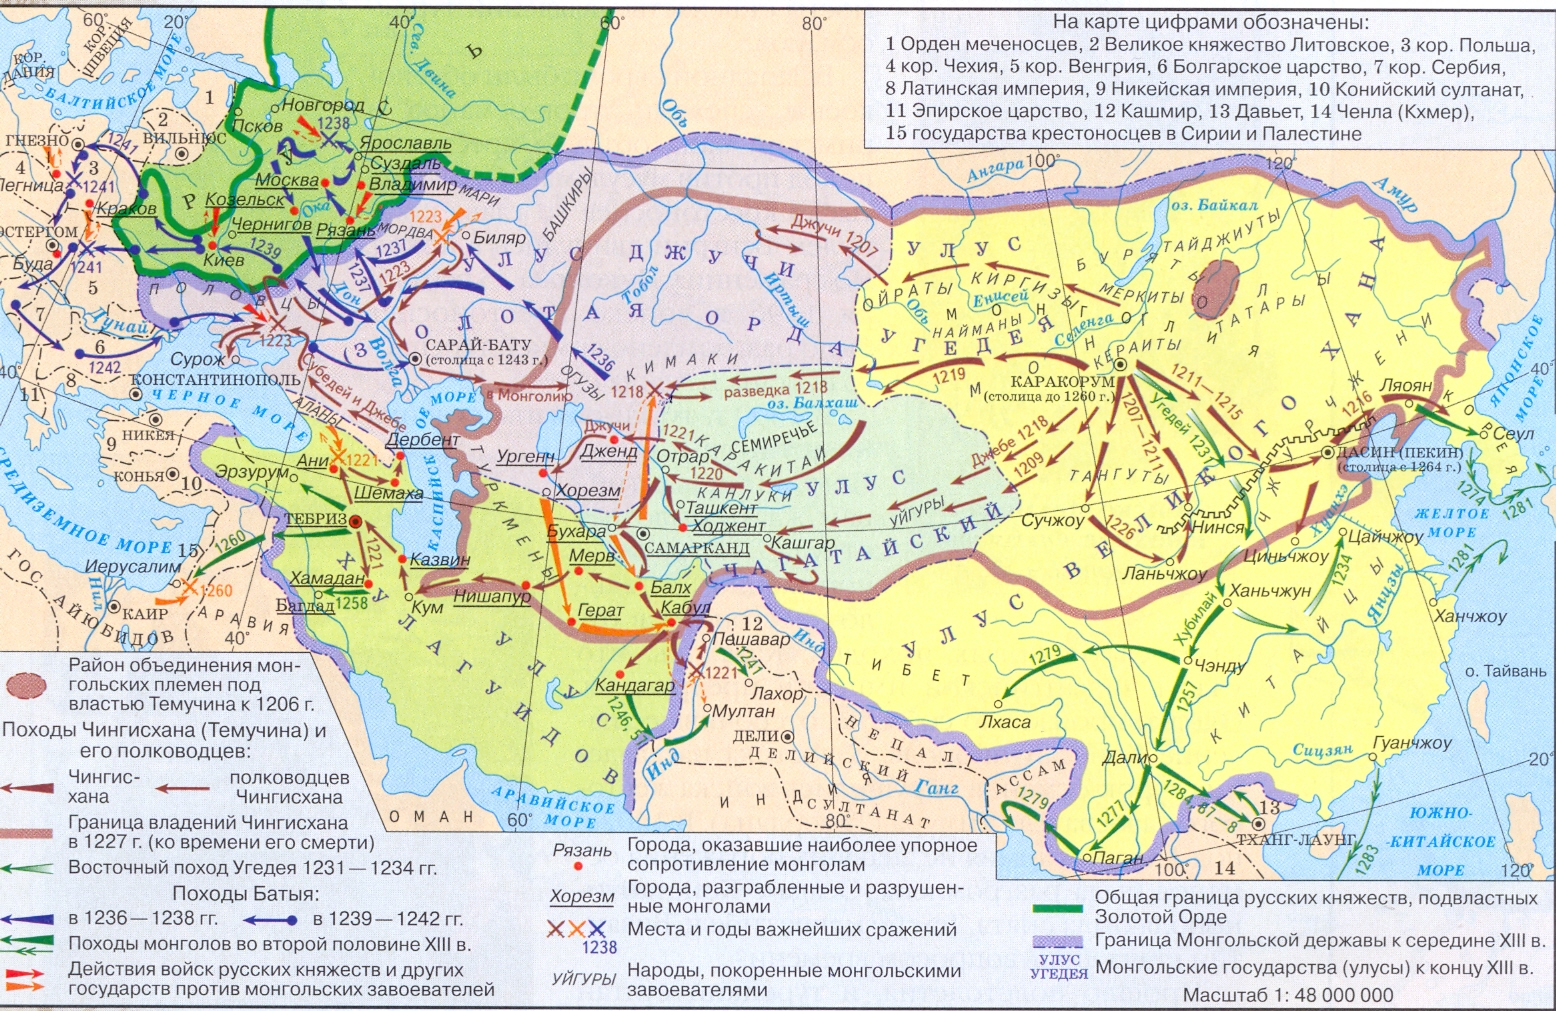 Где живут ханы. Карта завоеваний монголов в 13 веке. Монгольские завоевания 13-15 века карта. Завоевания Чингисхана карта. Монгольские завоевания в 13 веке карта.